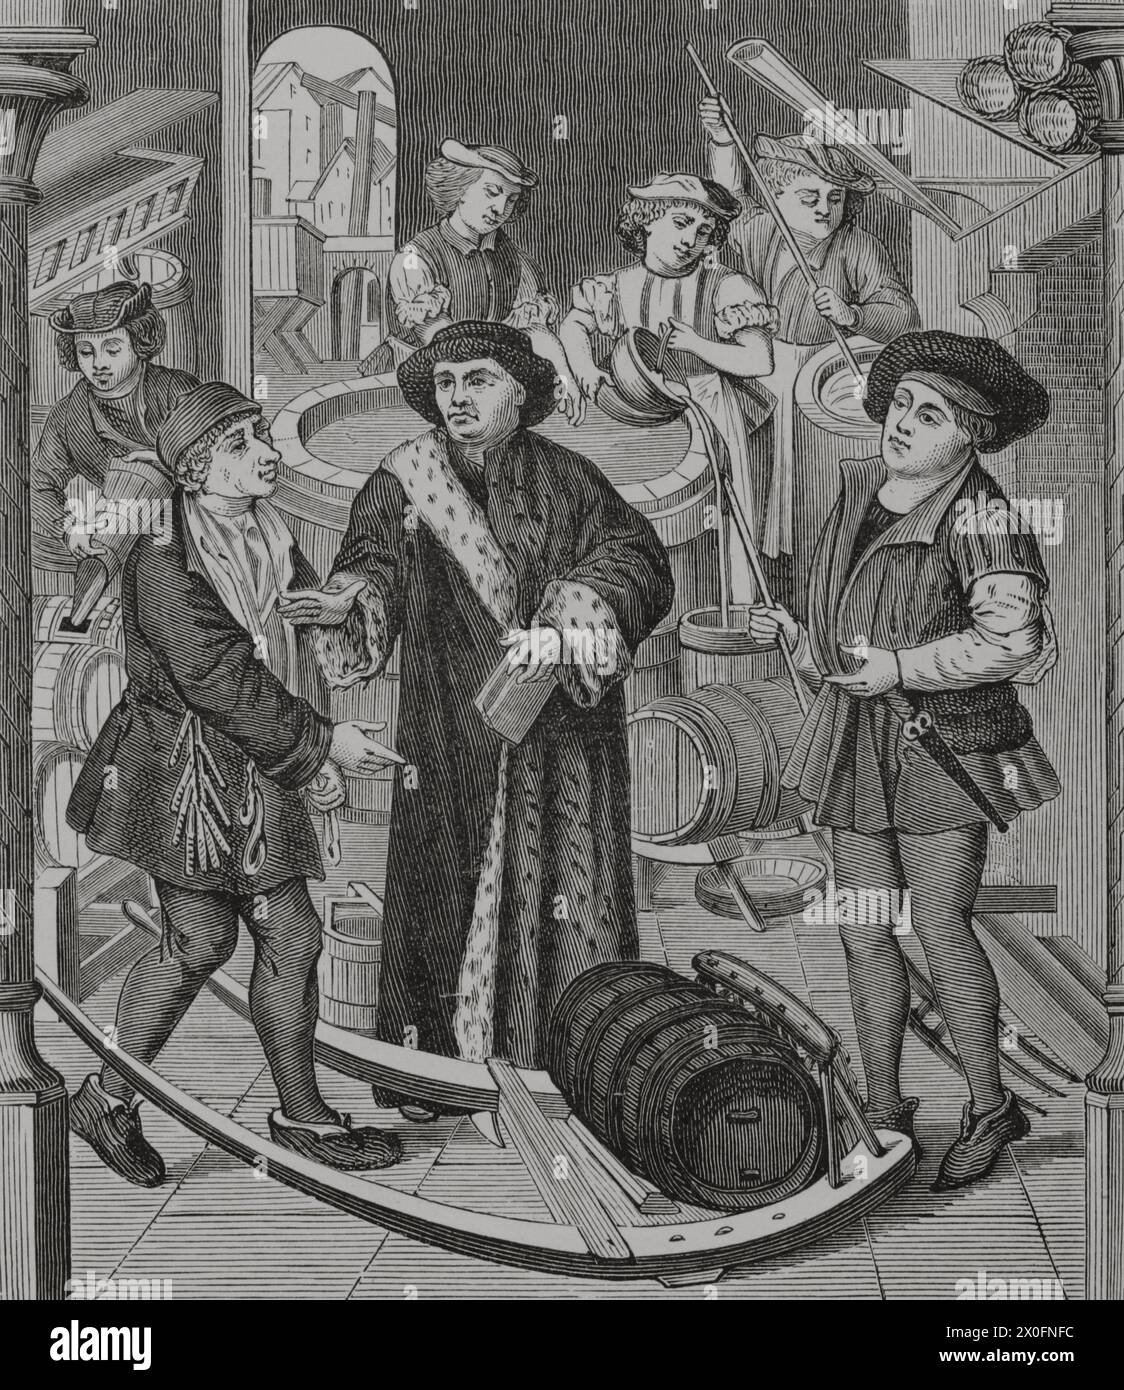 A droite de l'évêché de Tournai sur la bière. À l'origine, cet impôt était payé en nature. Le collecteur du Chapitre est allé à la maison des brasseurs pour le récupérer. Plus tard, il a été convenu que les brasseurs eux-mêmes transporteraient à la Maison le montant qui leur serait dû en nature. À partir de 1286, les brasseurs ont été autorisés à conserver toutes les prestations en échange du paiement d'une taxe annuelle. L'évêque de Tournai reçoit la dîme de bière accordée par le roi Chilpéric. Gravure d'après un vitrail de la cathédrale notre Dame de Tournai, XVe siècle. « Moeurs, usages et costumes au moyen-âge et à l'époque de l Banque D'Images